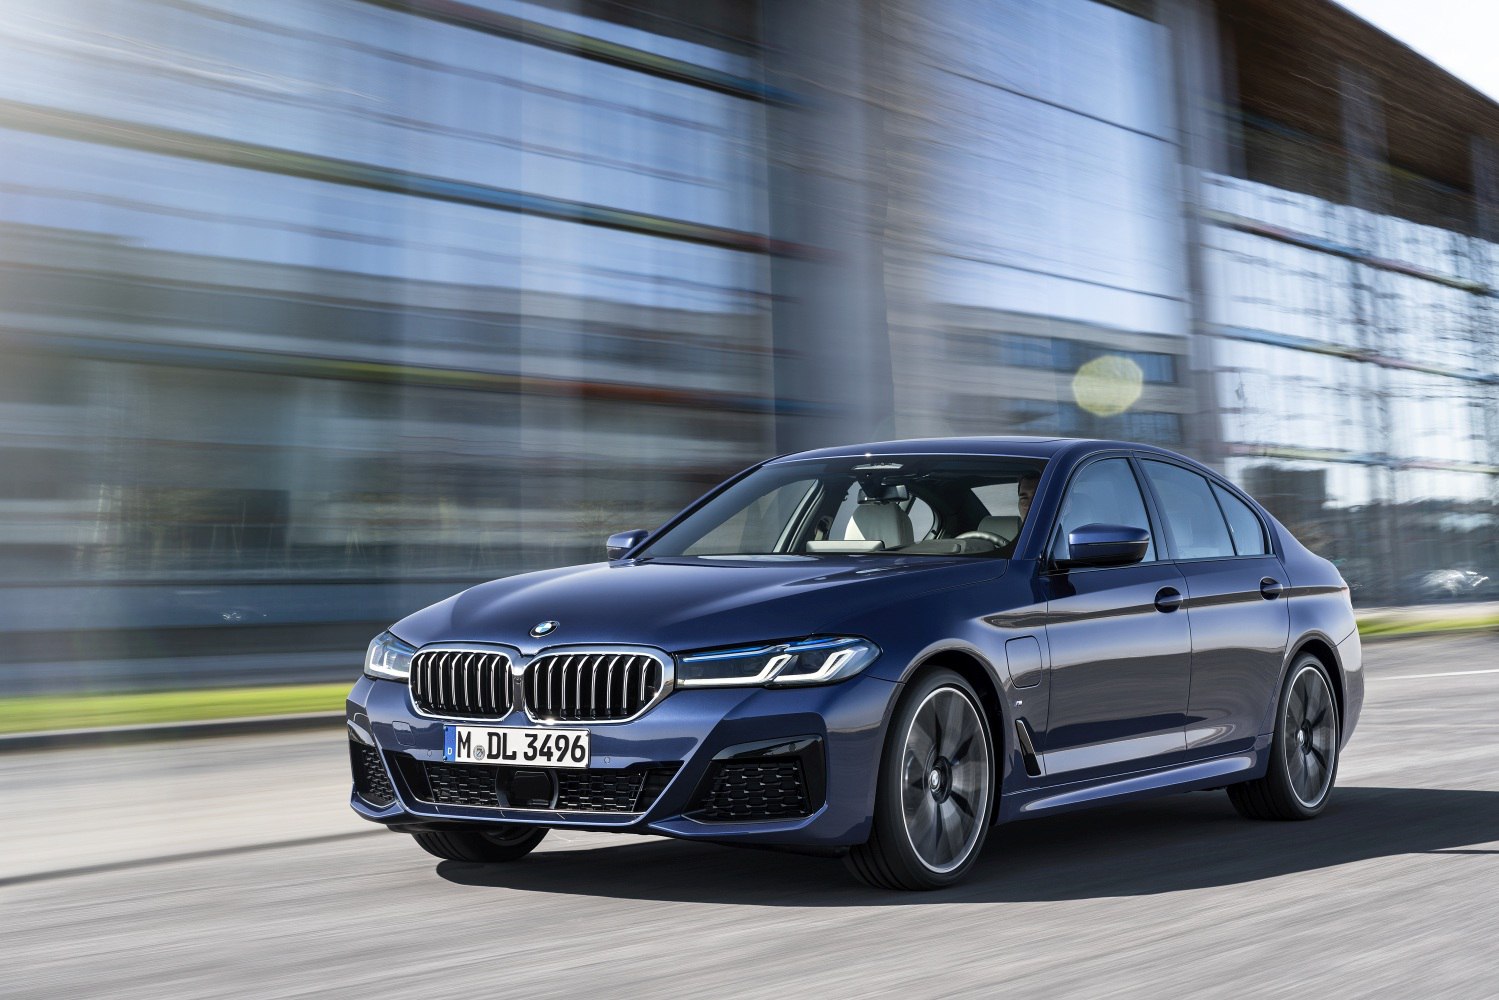 https://www.auto-data.net/images/f83/BMW-5-Series-Sedan-G30-LCI-facelift-2020.jpg